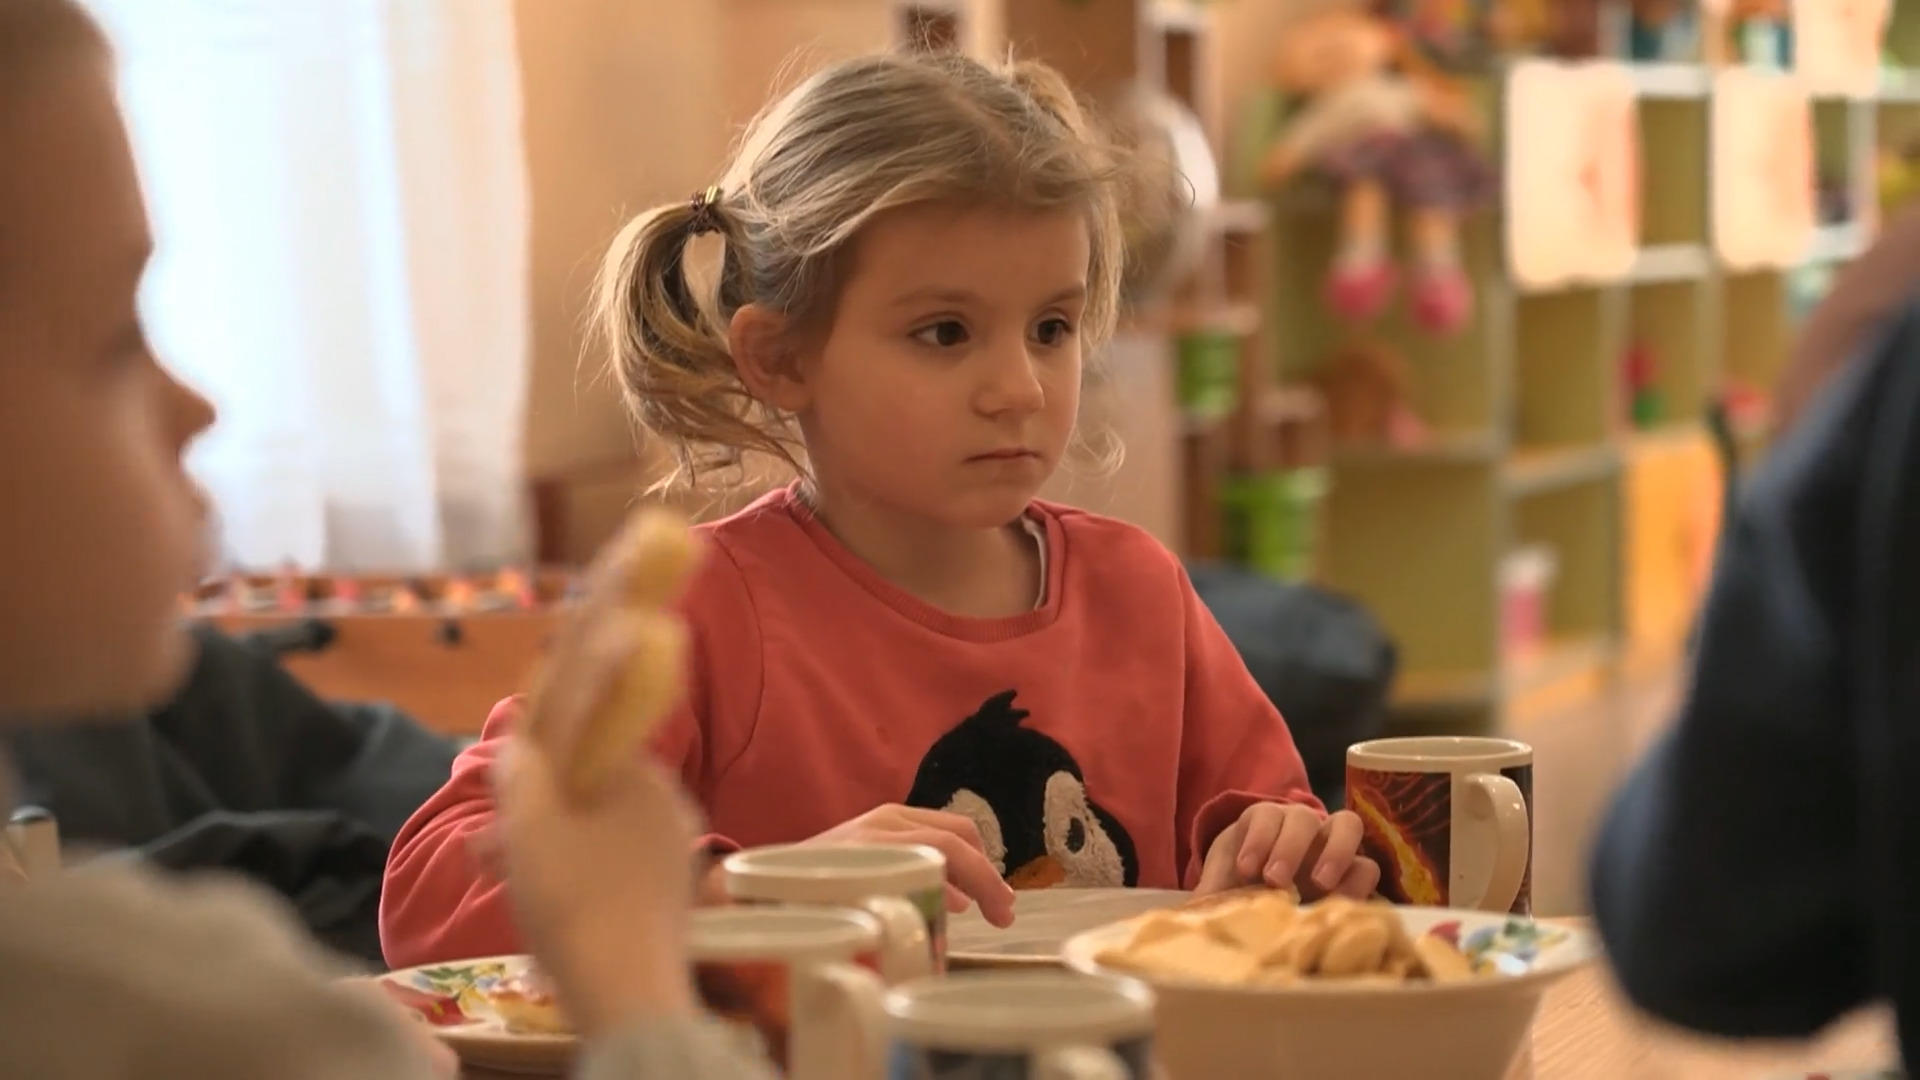 Wir unterstützen Kinder-Tageszentren in der Ukraine Hilfe für Kriegswaisen